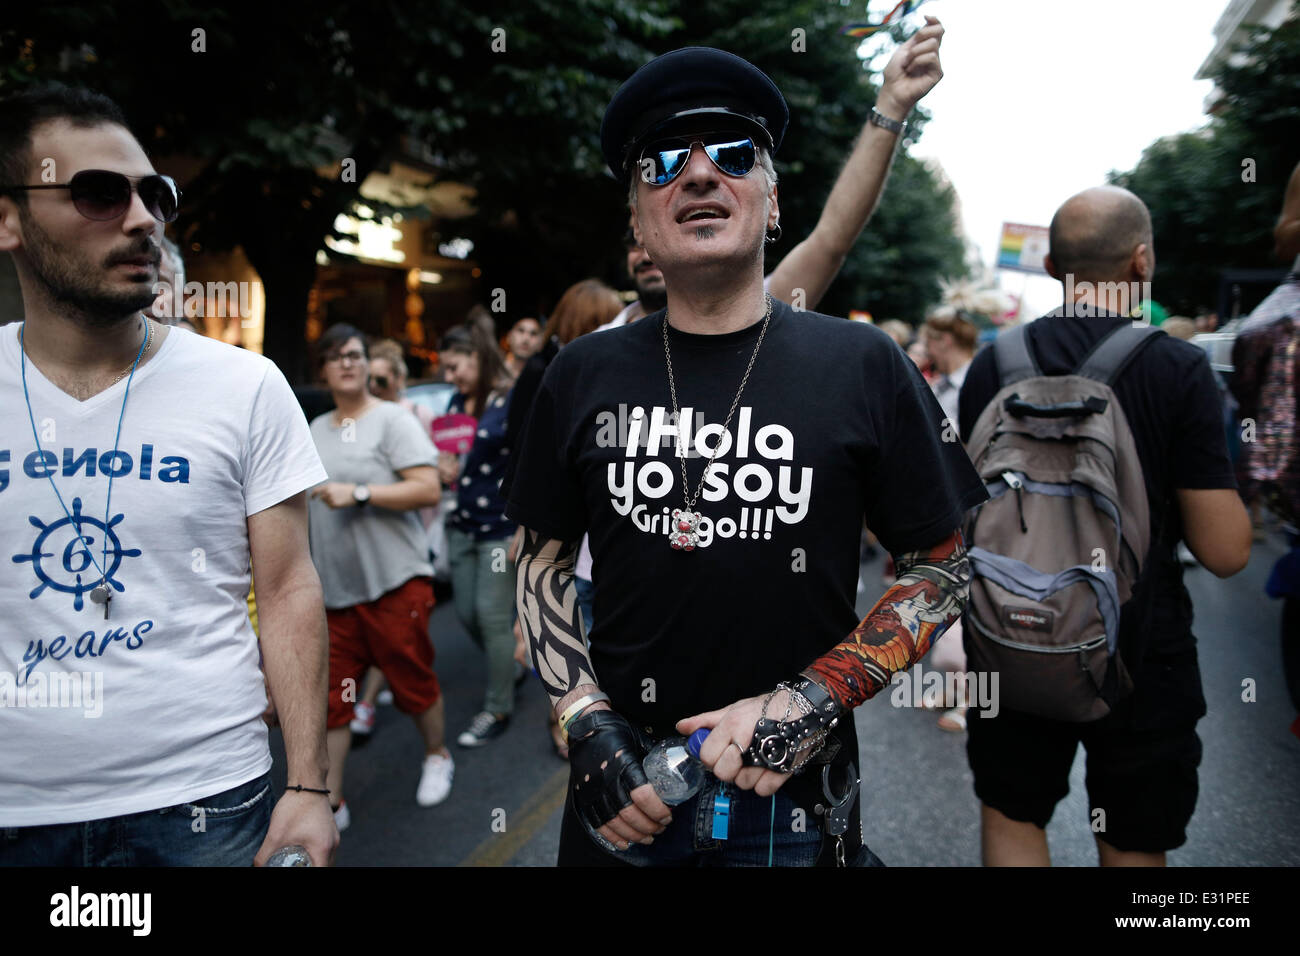 Activistas gays toman parte en un desfile, en Salónica, el sábado, 21 de junio de 2014. Miles de activistas gays en Tesalónica, Grecia, han organizado la tercera Thessaloniki orgullo festival, un evento de 2 días que incluyó un desfile alrededor del centro de la ciudad. La organización del evento atrajo fuertes críticas de los círculos conservadores y hubo una marcha de protesta contra el "sodomites' el viernes. Tesalónica, Grecia, el 21 de junio de 2014. Foto de stock